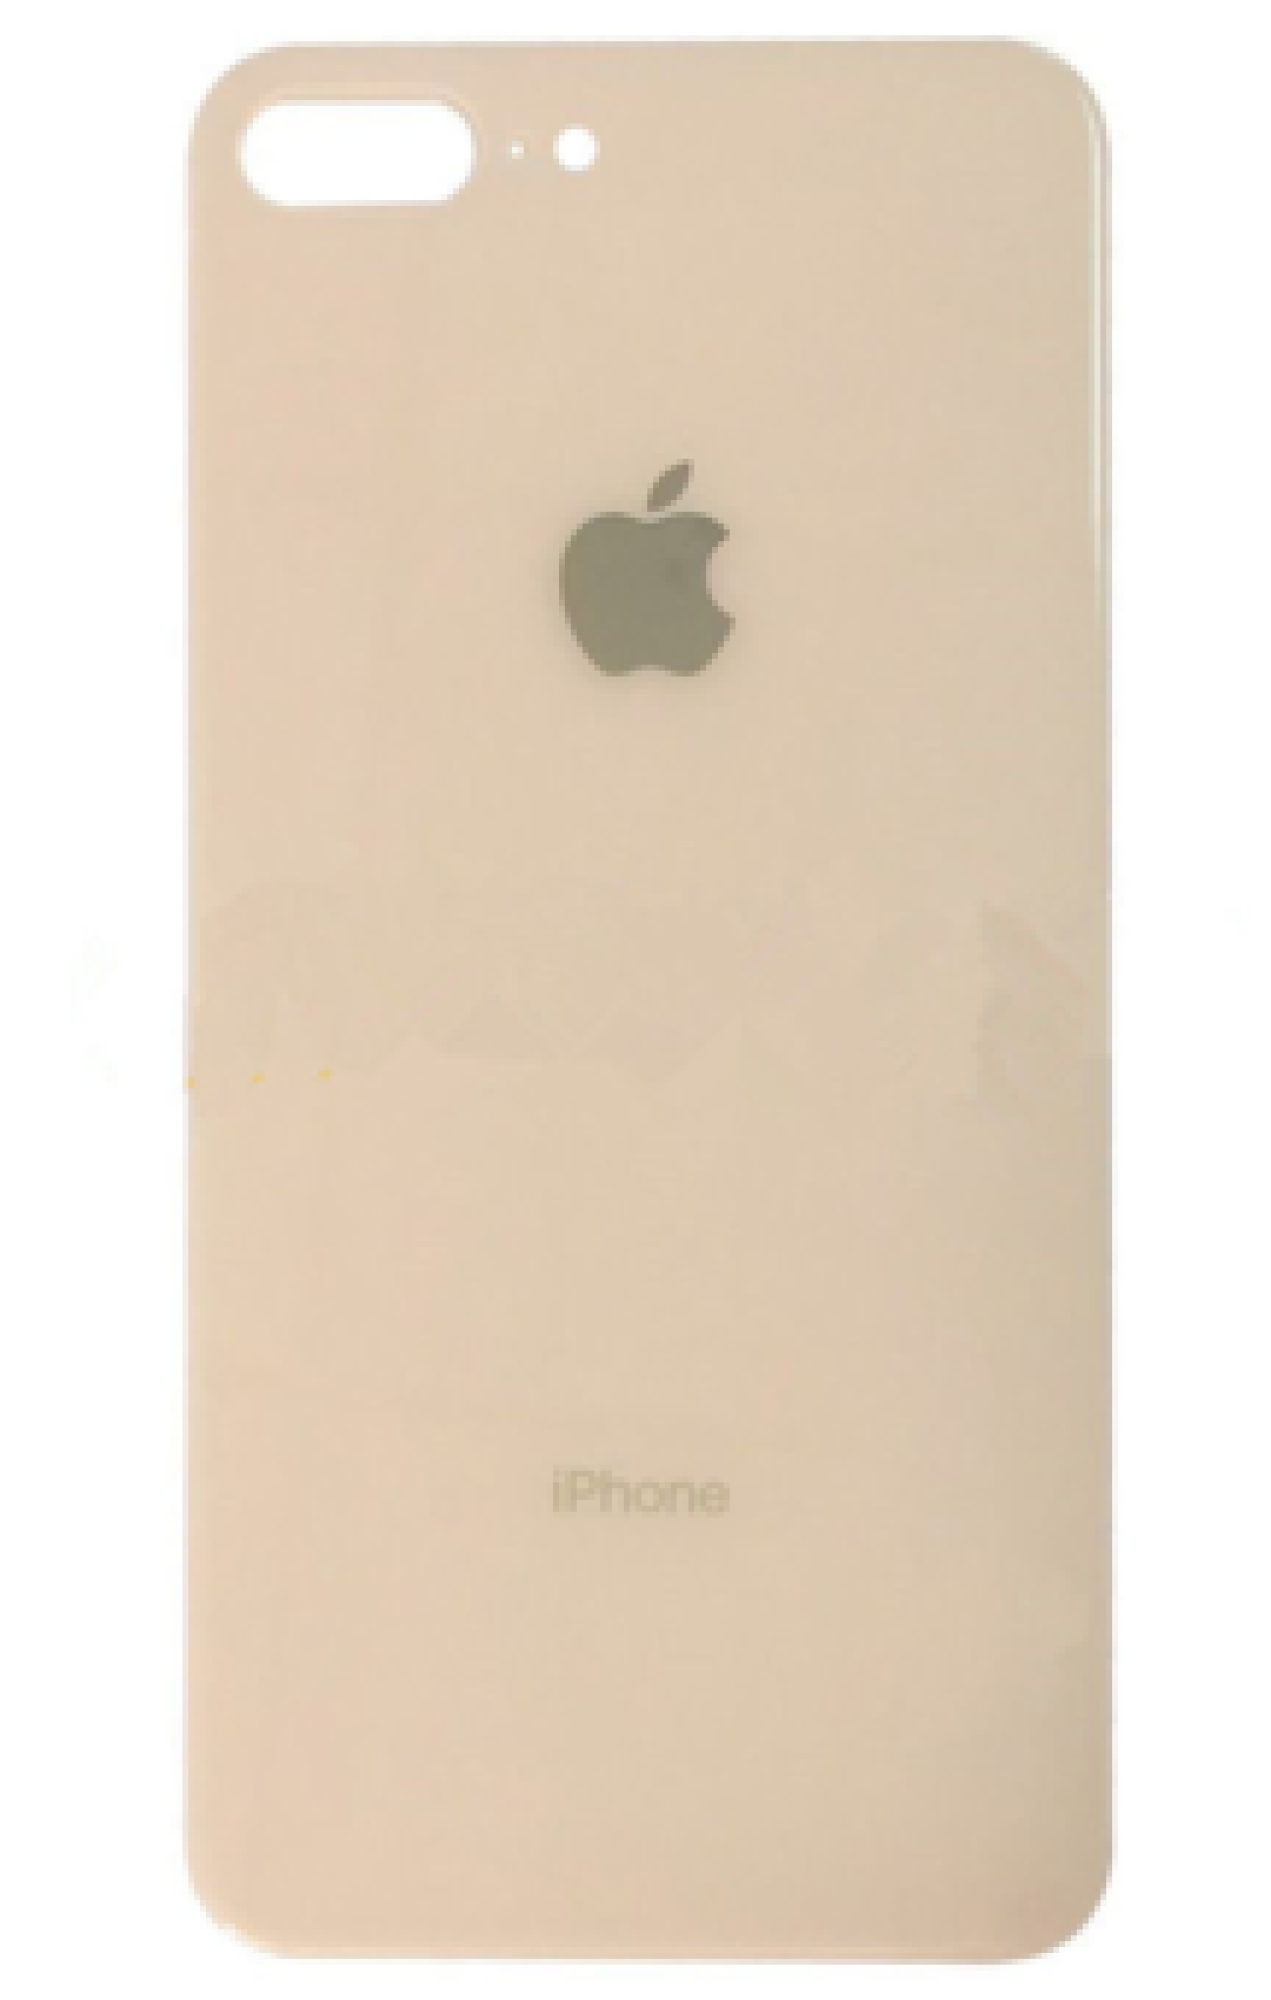 Задняя крышка для Apple iPhone 8G Plus (широкое отверстие под камеру), золотая - фото